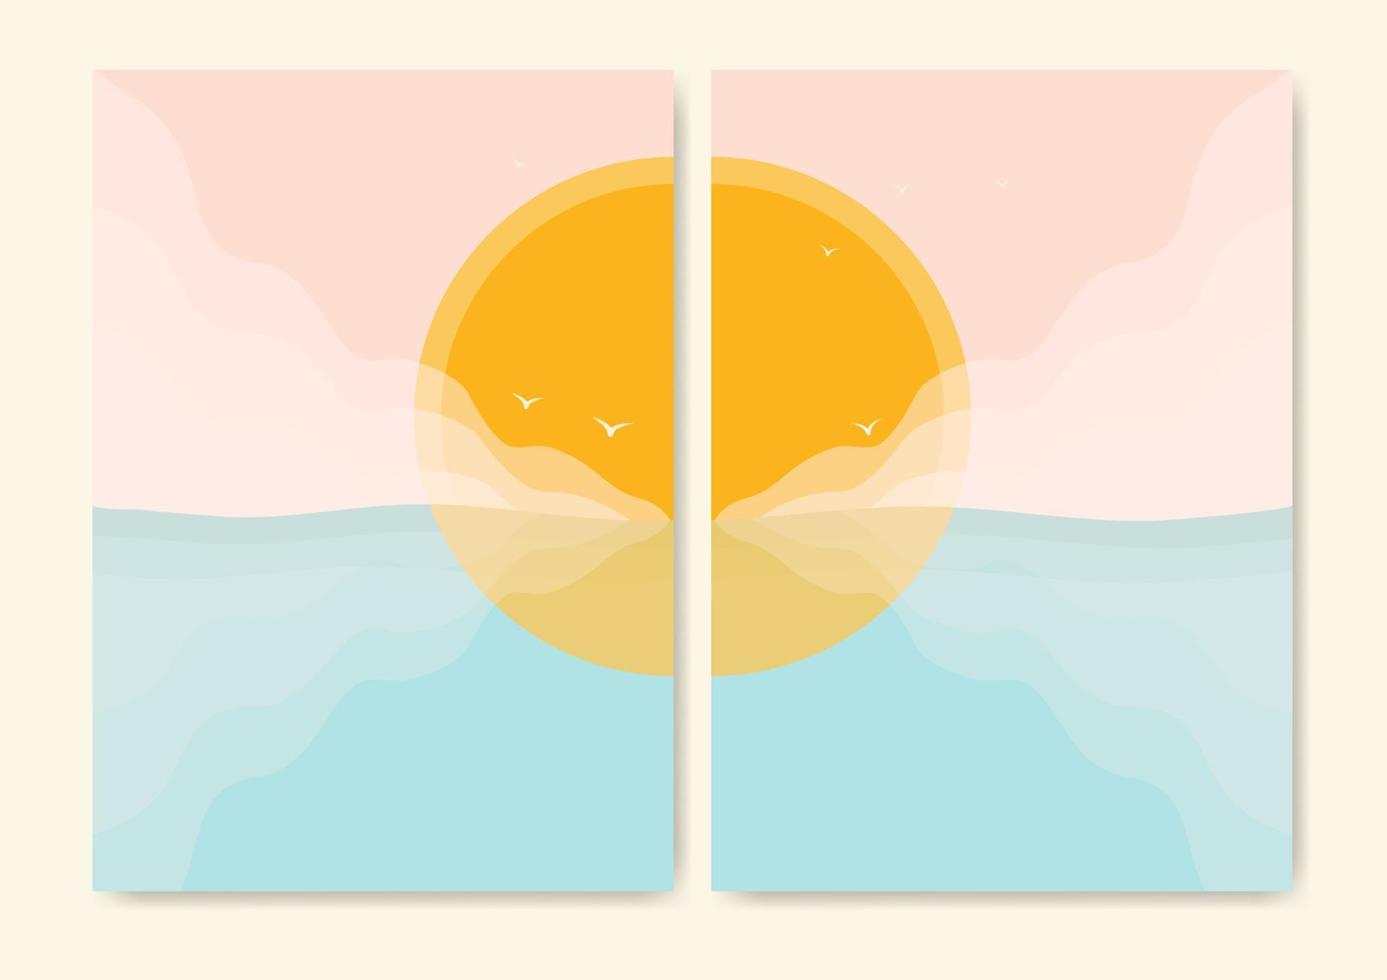 impresión minimalista moderna al lado del océano. paisaje estético de olas oceánicas y sol. horizonte, ilustración de vector de onda